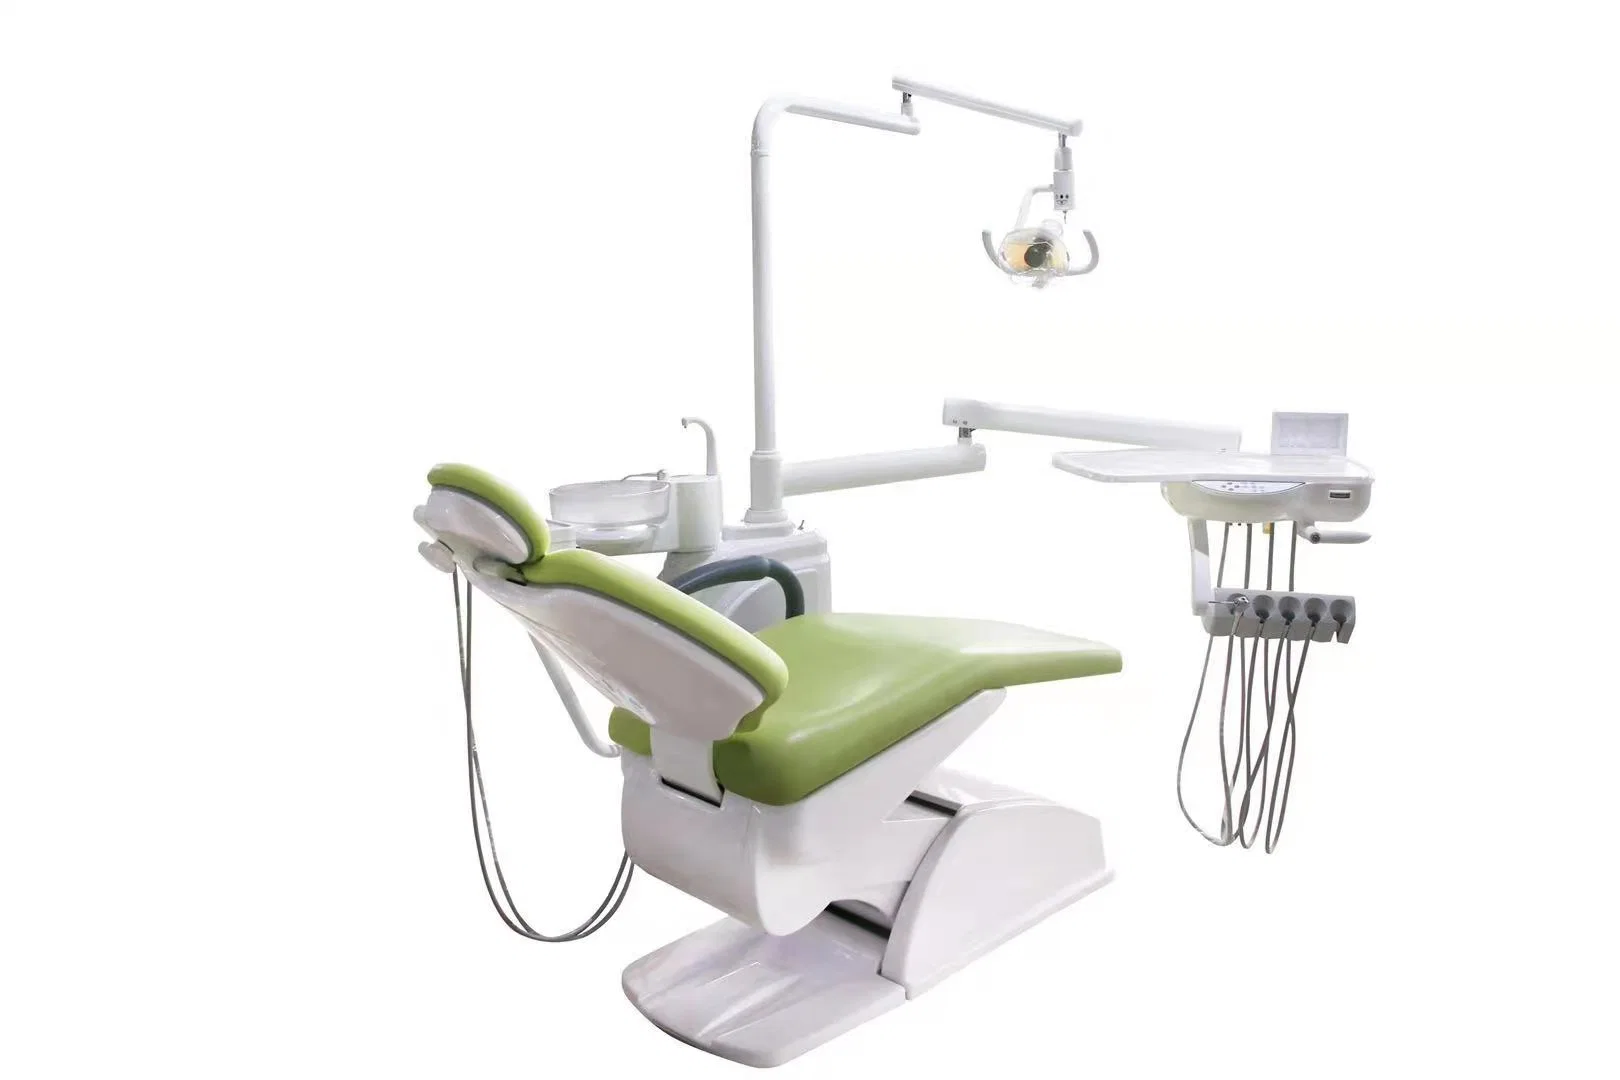 Cadeira odontológica ajustável barato preço unitário odontológico eléctrico